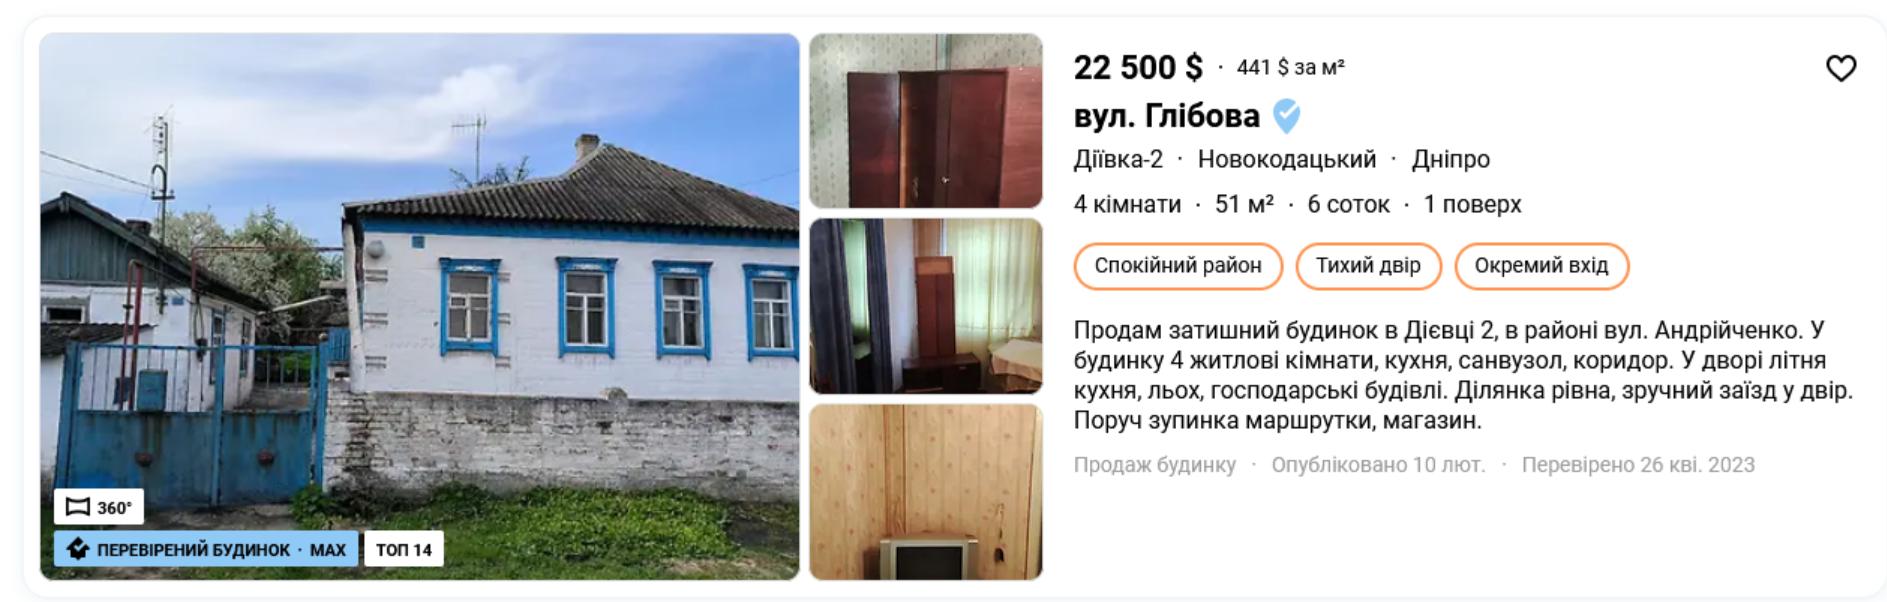 будинок у Новокодацькому районі Дніпра